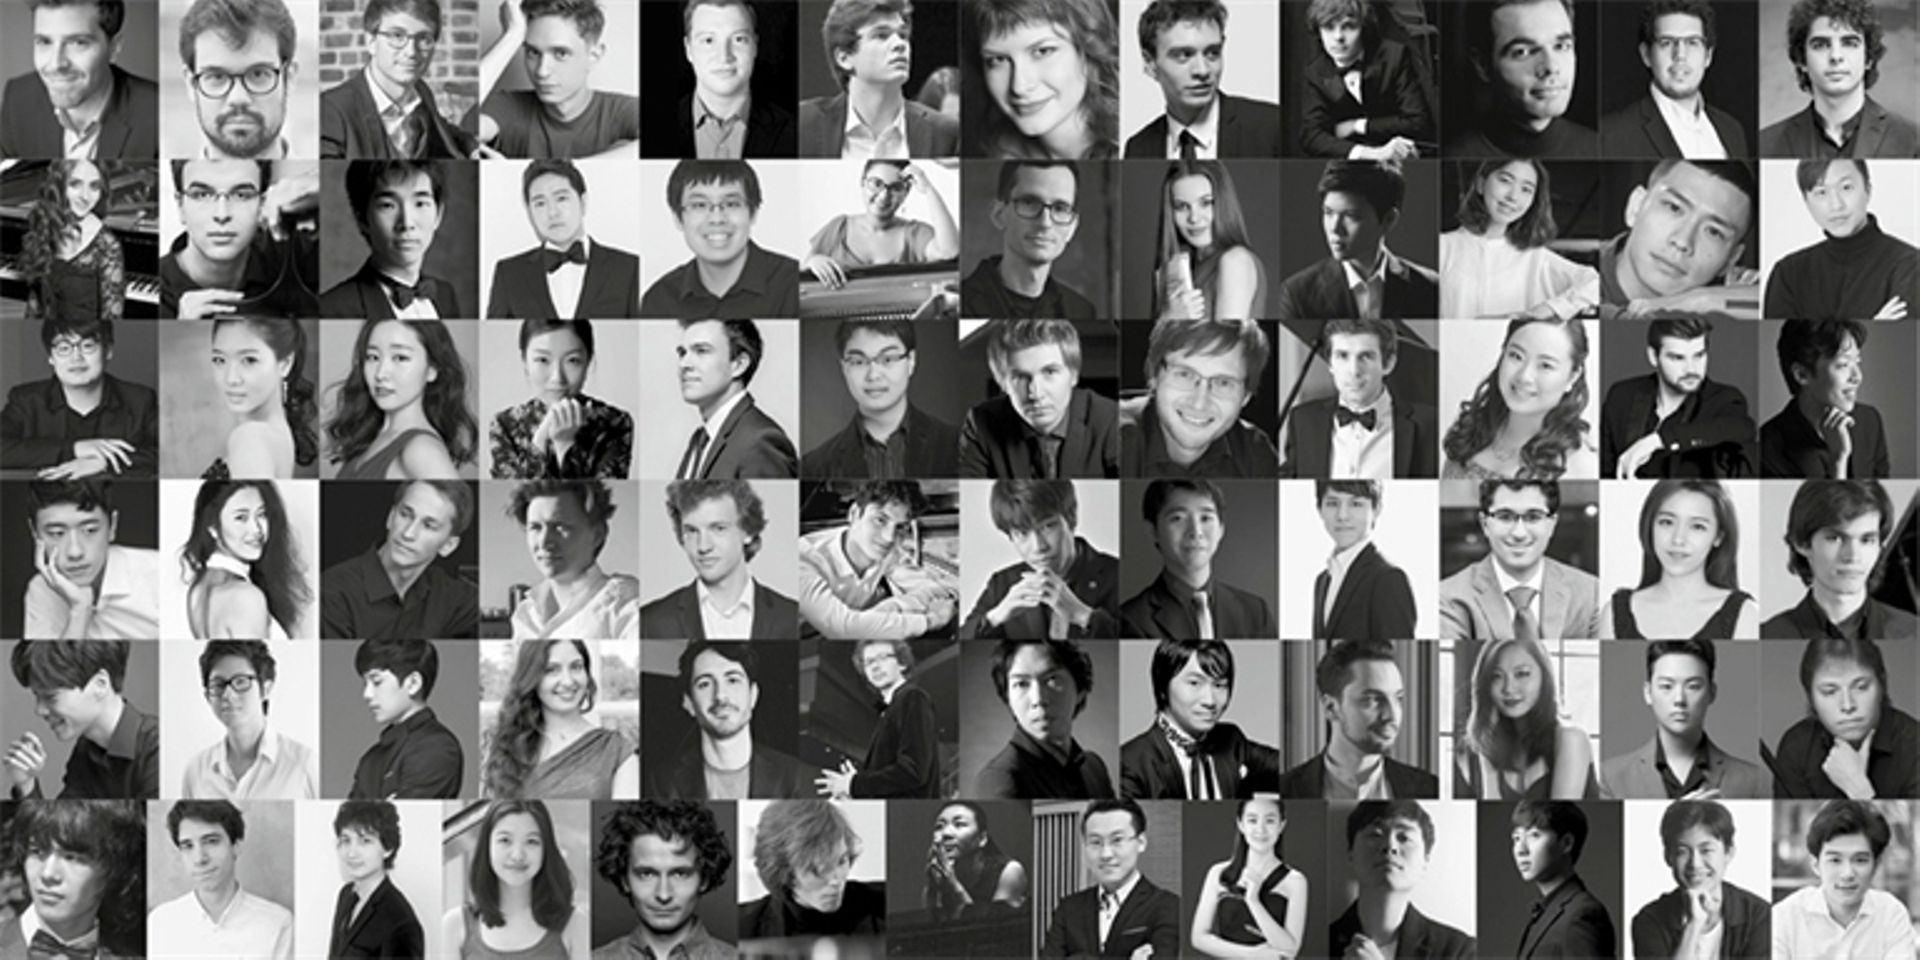 Les 64 candidats de l'édition 2021 du Concours Reine Elisabeth piano